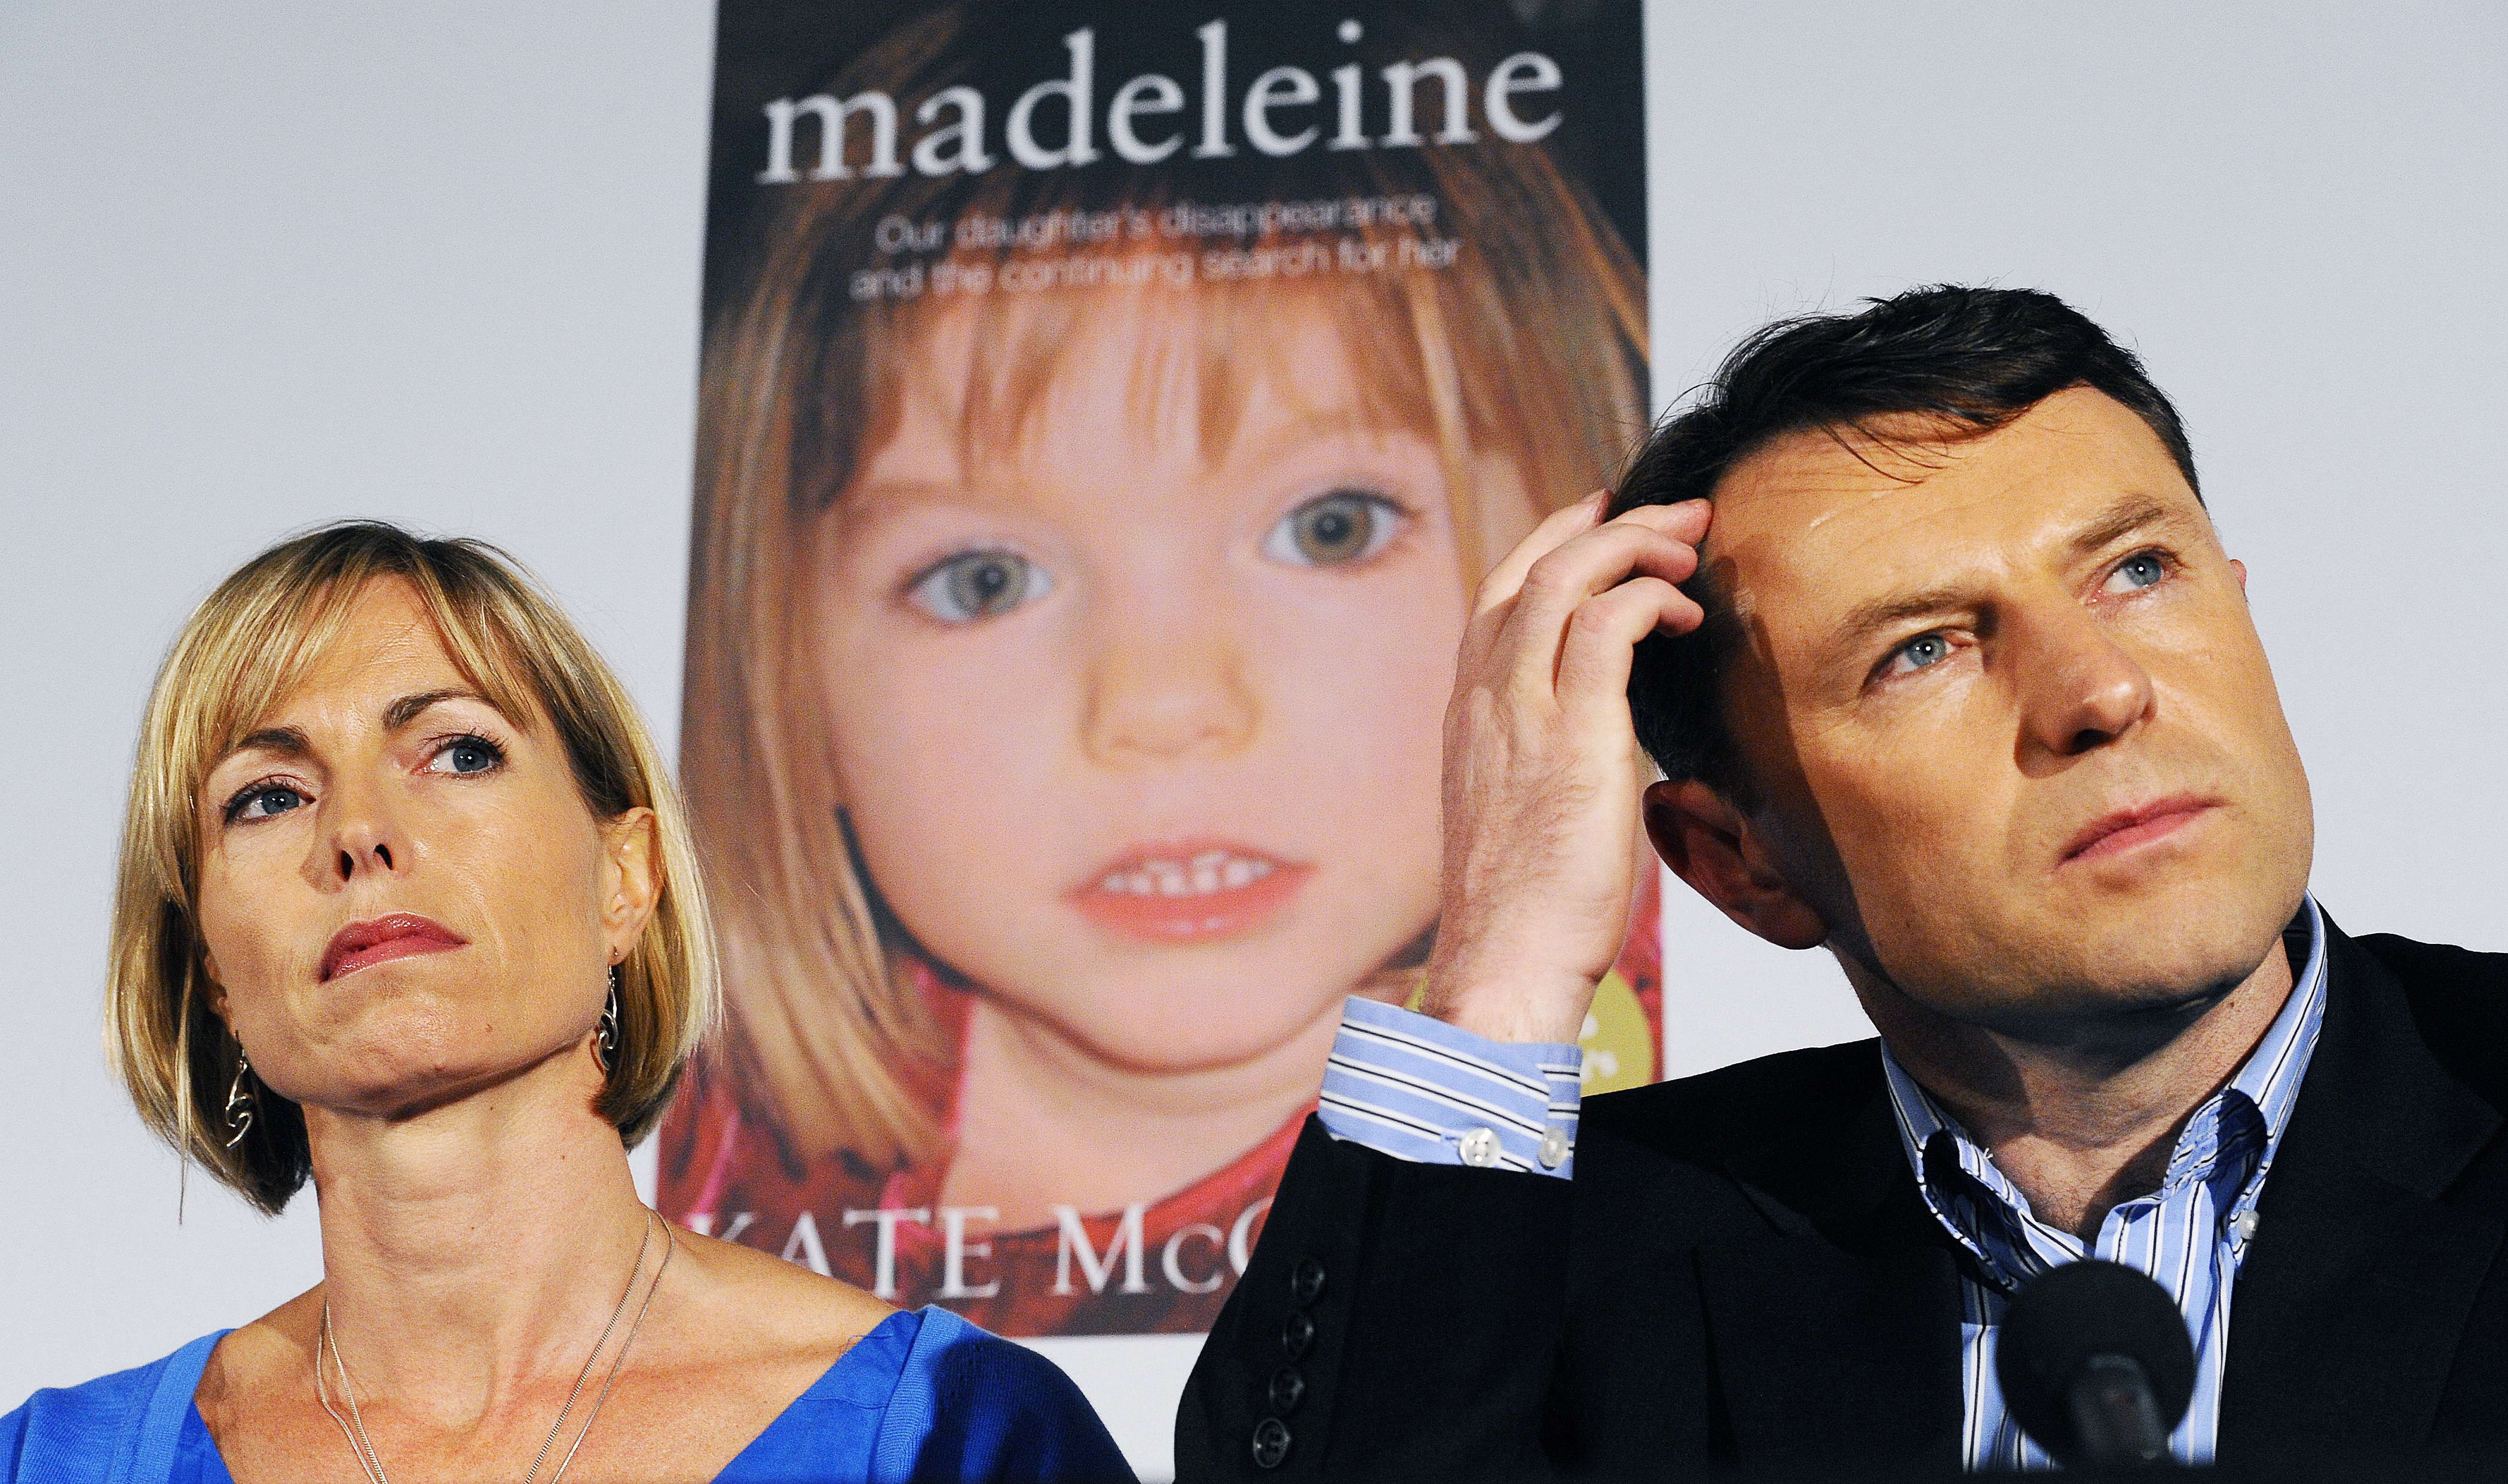 Hivatalos gyanúsítás a 15 éve eltűnt Madeleine McCann ügyében